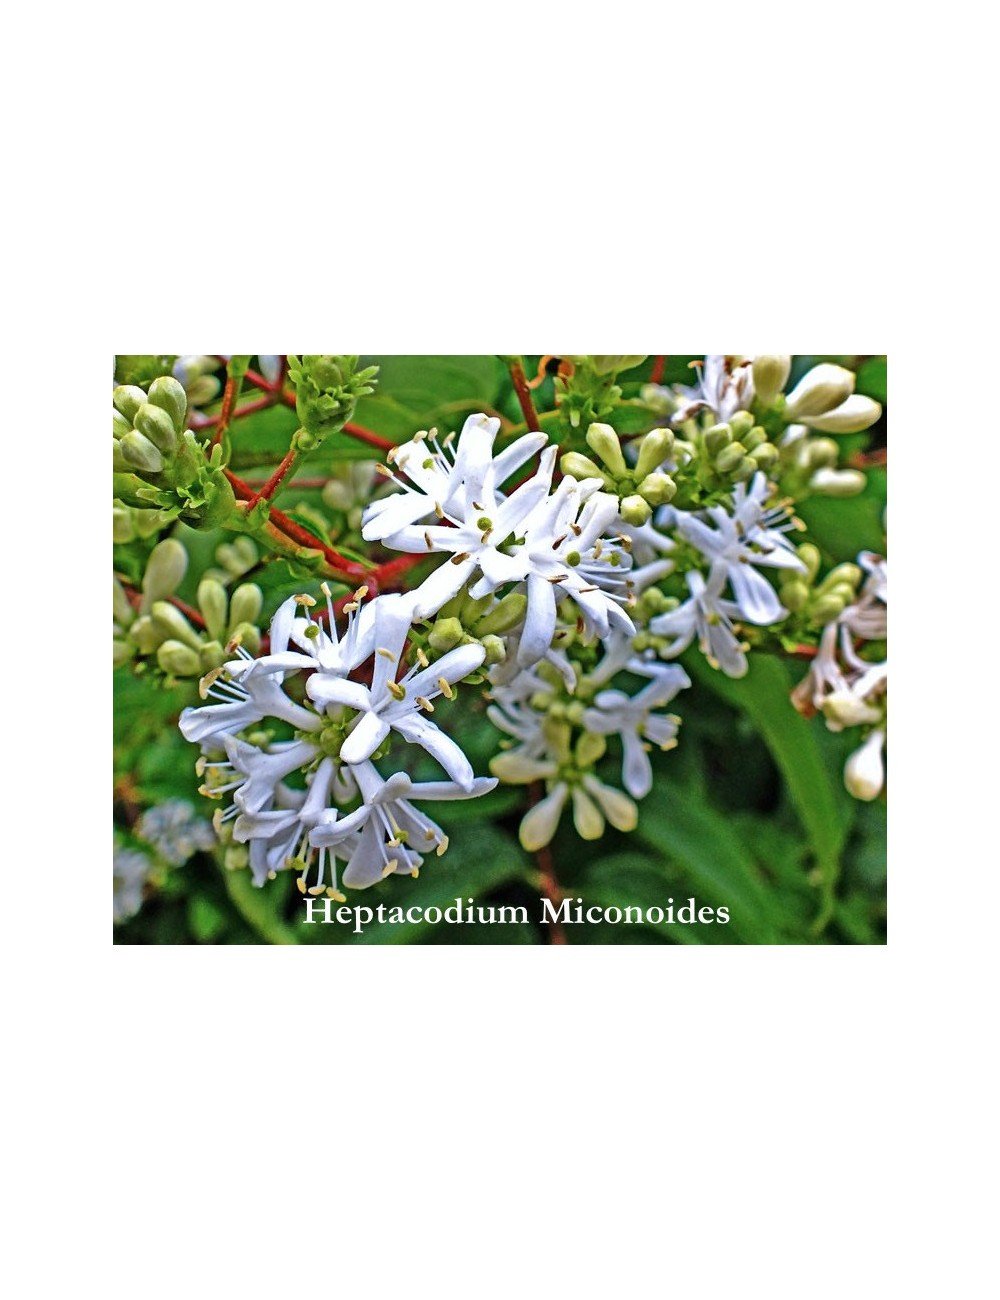 Heptacodium Miconioides